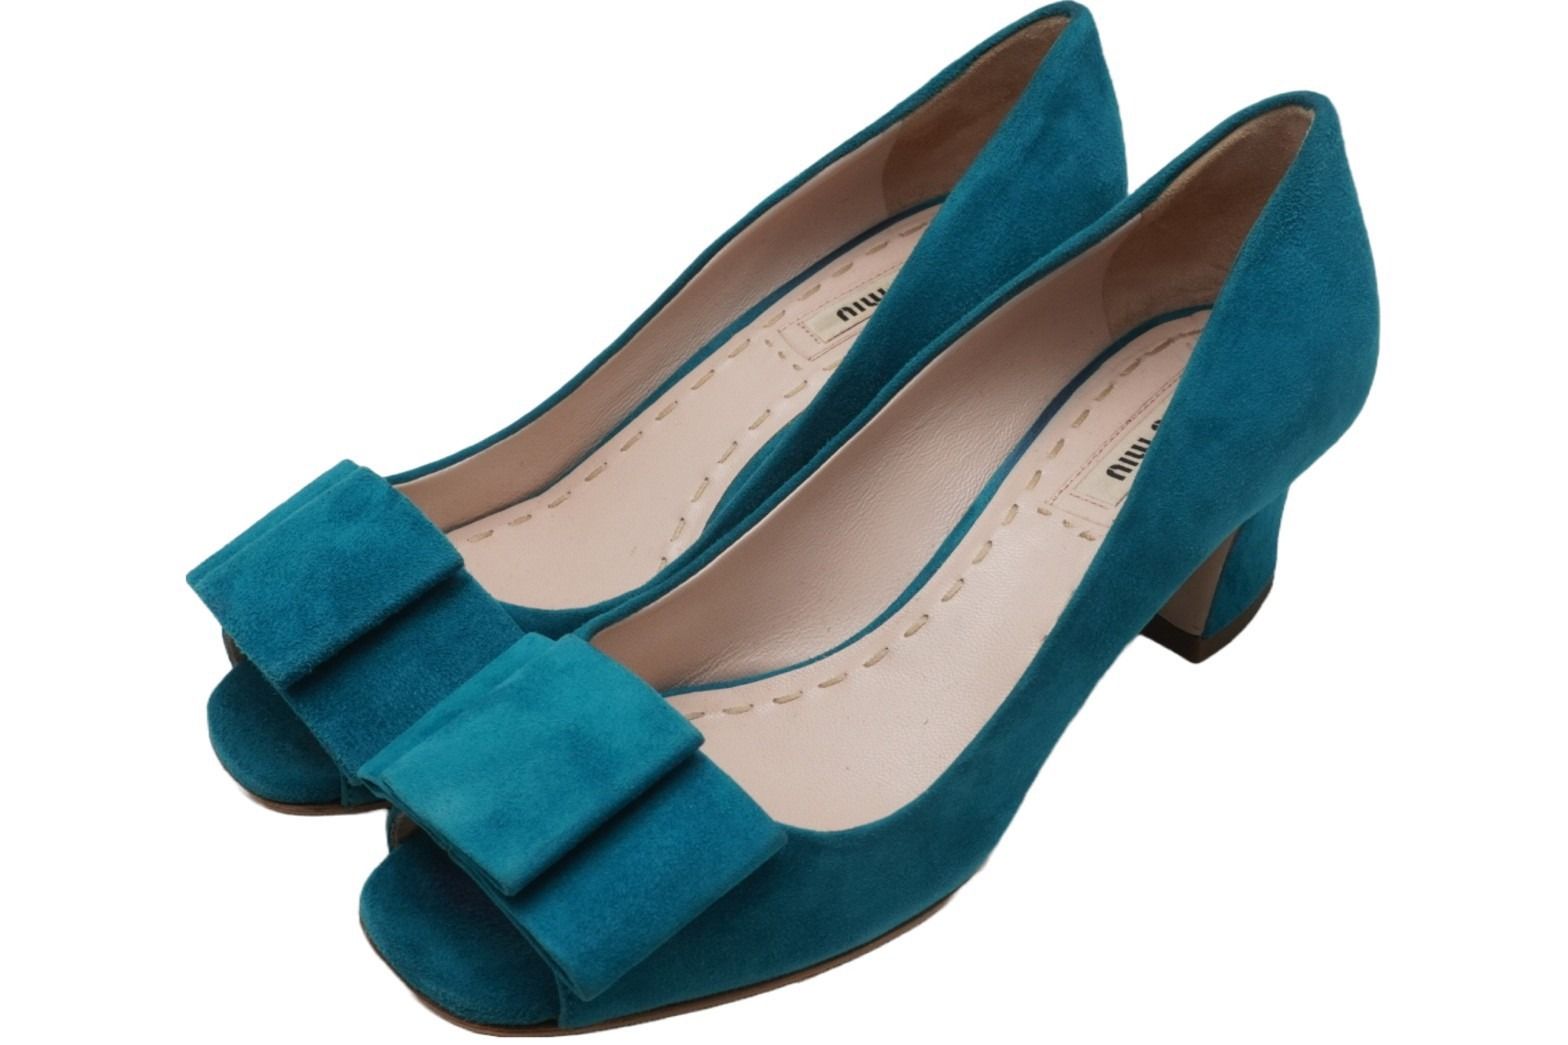 MIUMIU ミュウミュウ スエード パンプス ターコイズブルー シューズ 靴 ロゴ デザイン サイズ35 美品 中古 51241